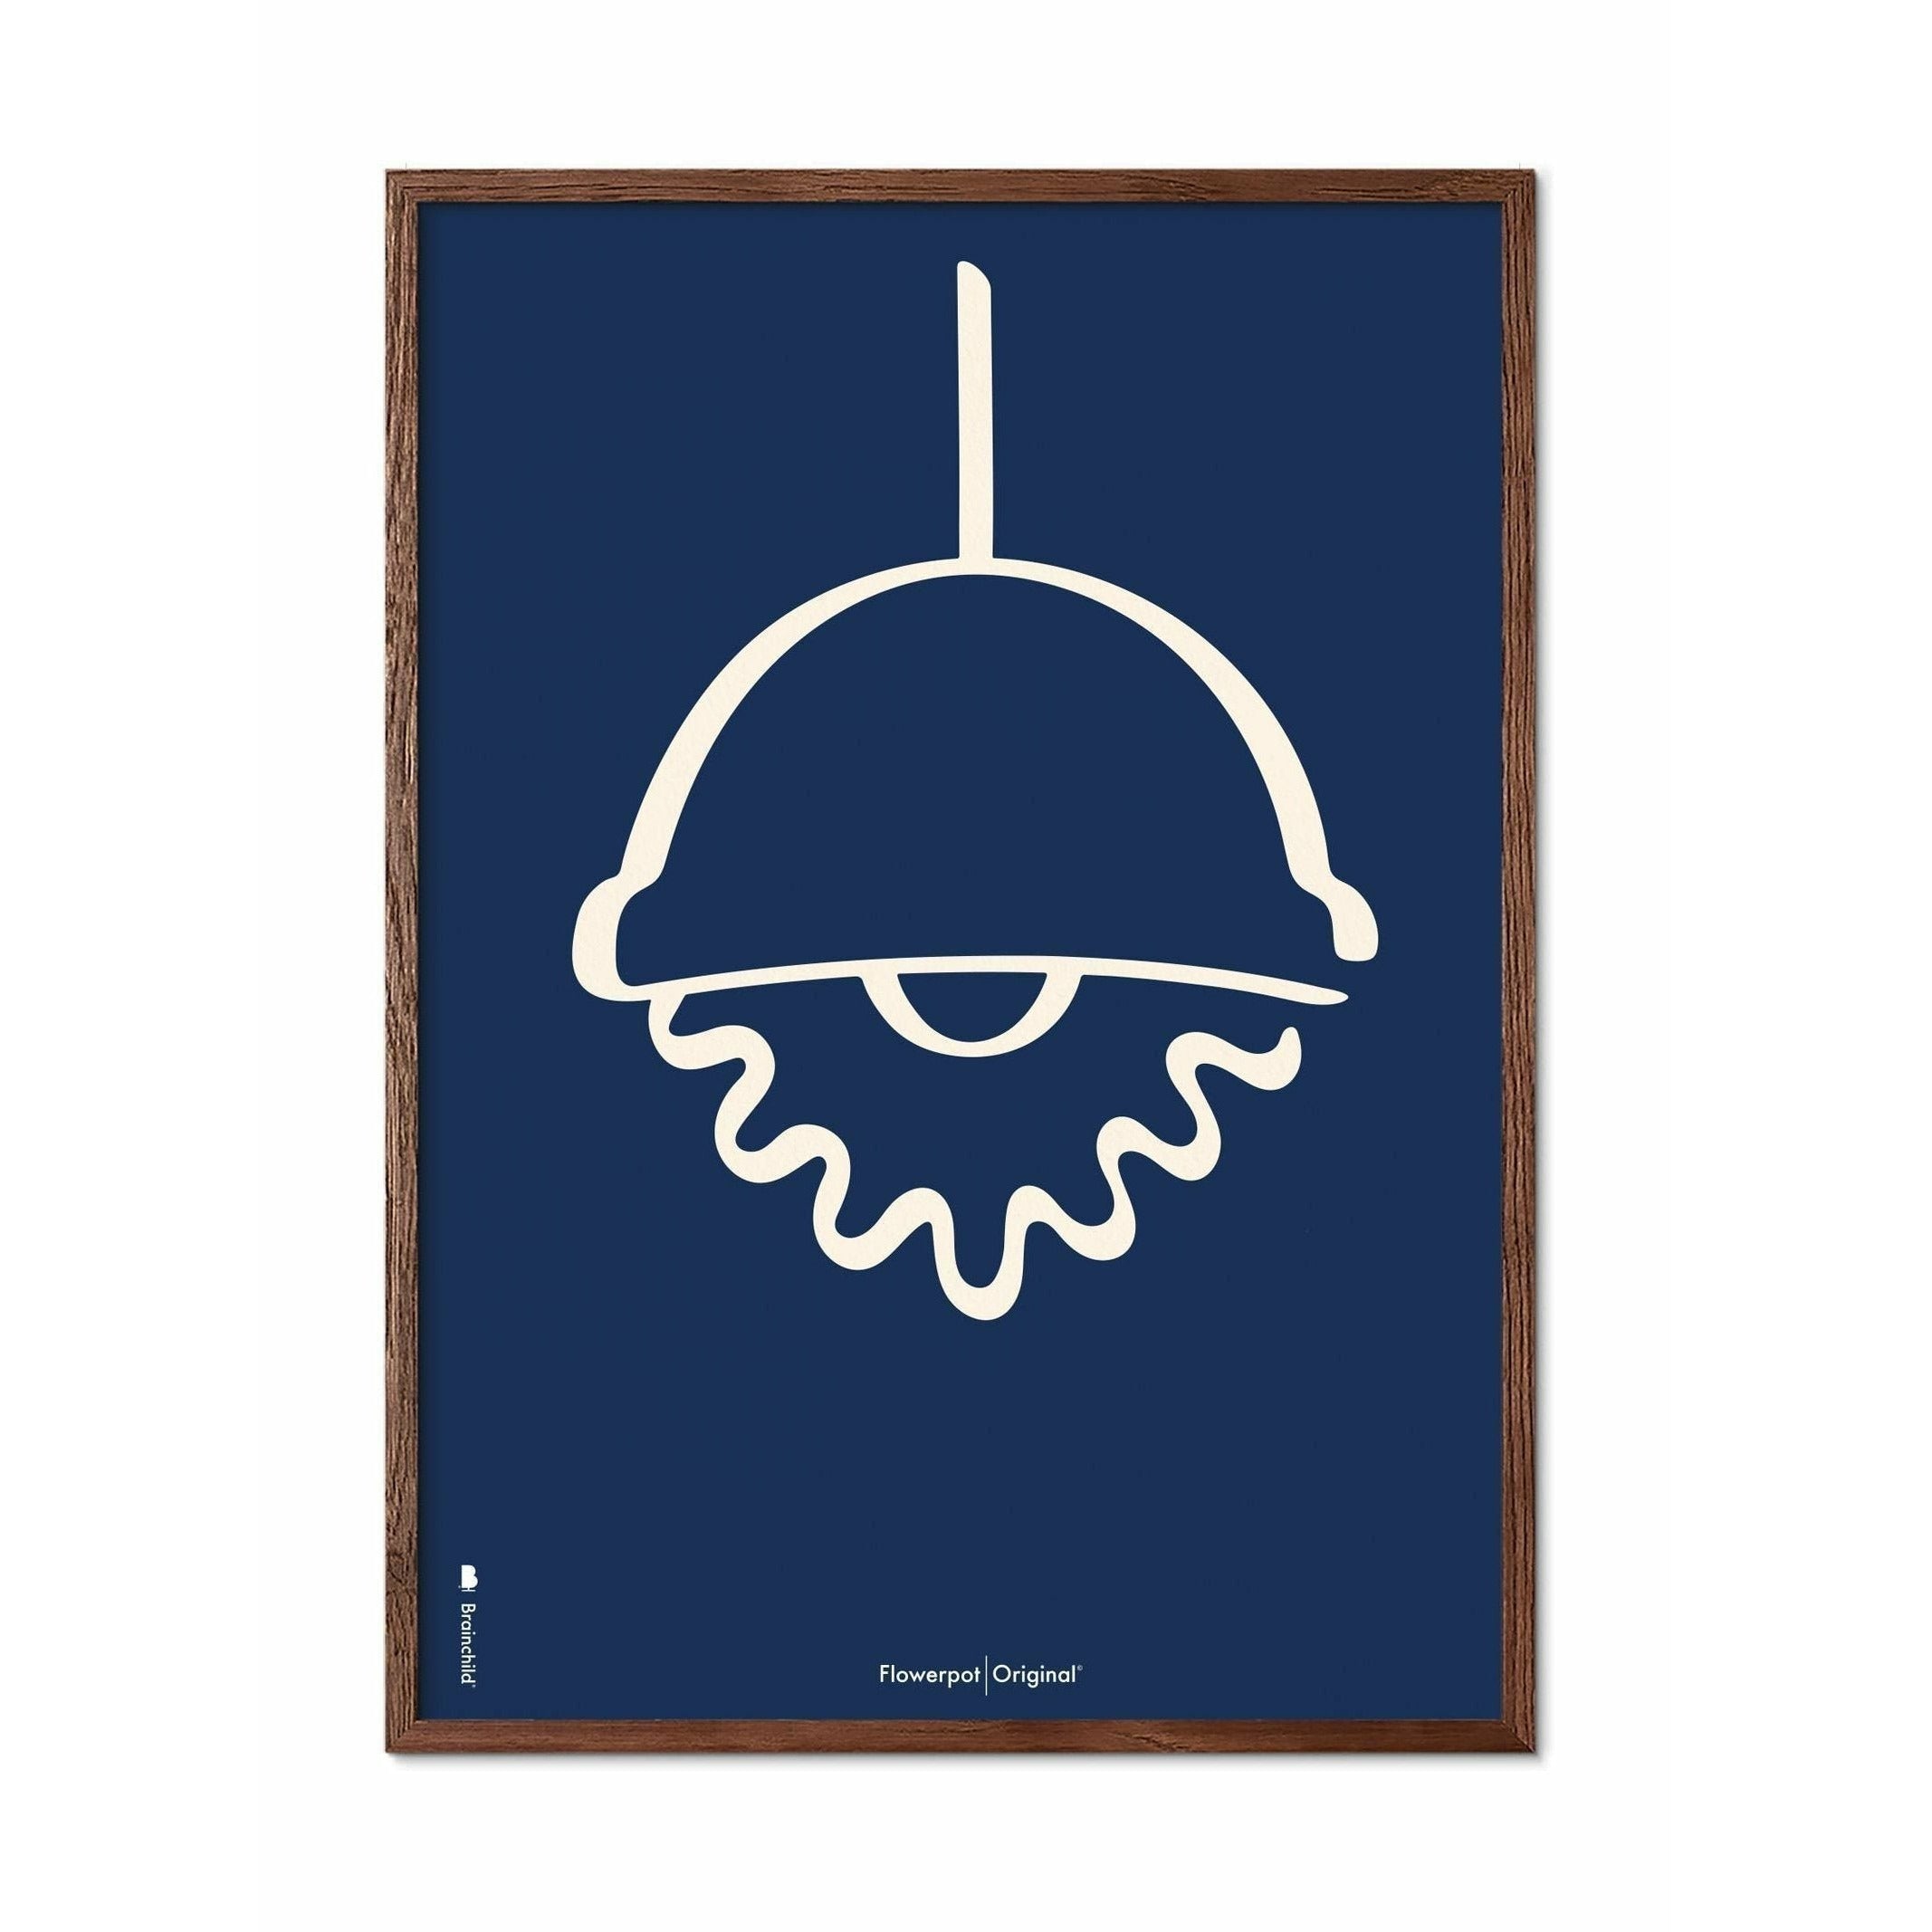 Plakát Brainchild Flowerpot Line, rám vyrobený z tmavého dřeva 30x40 cm, modré pozadí